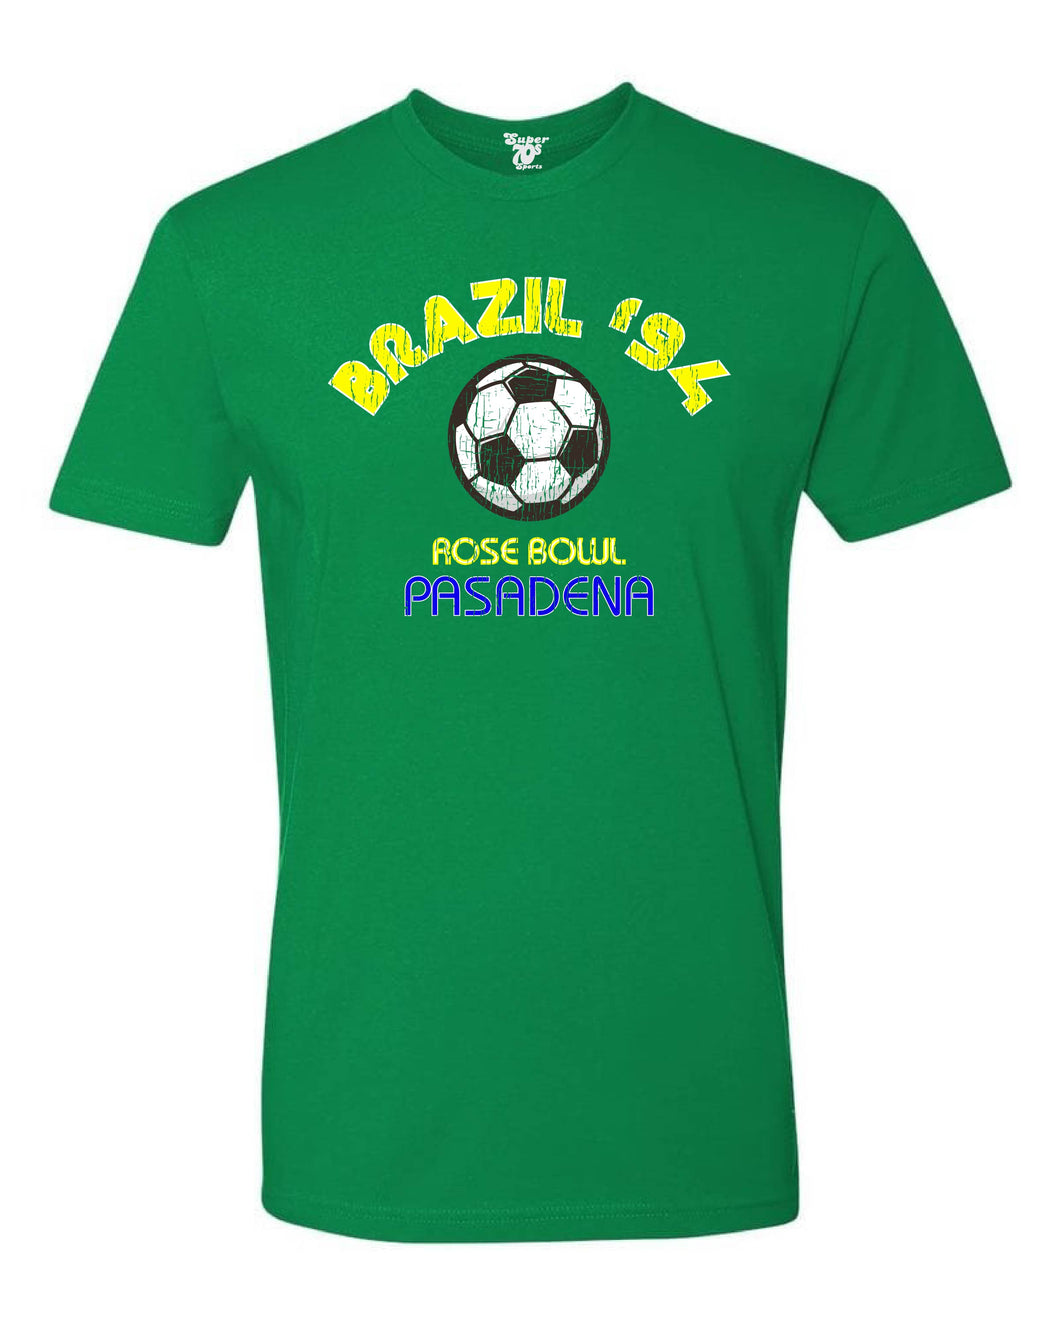 Brazil ‘94 Tee